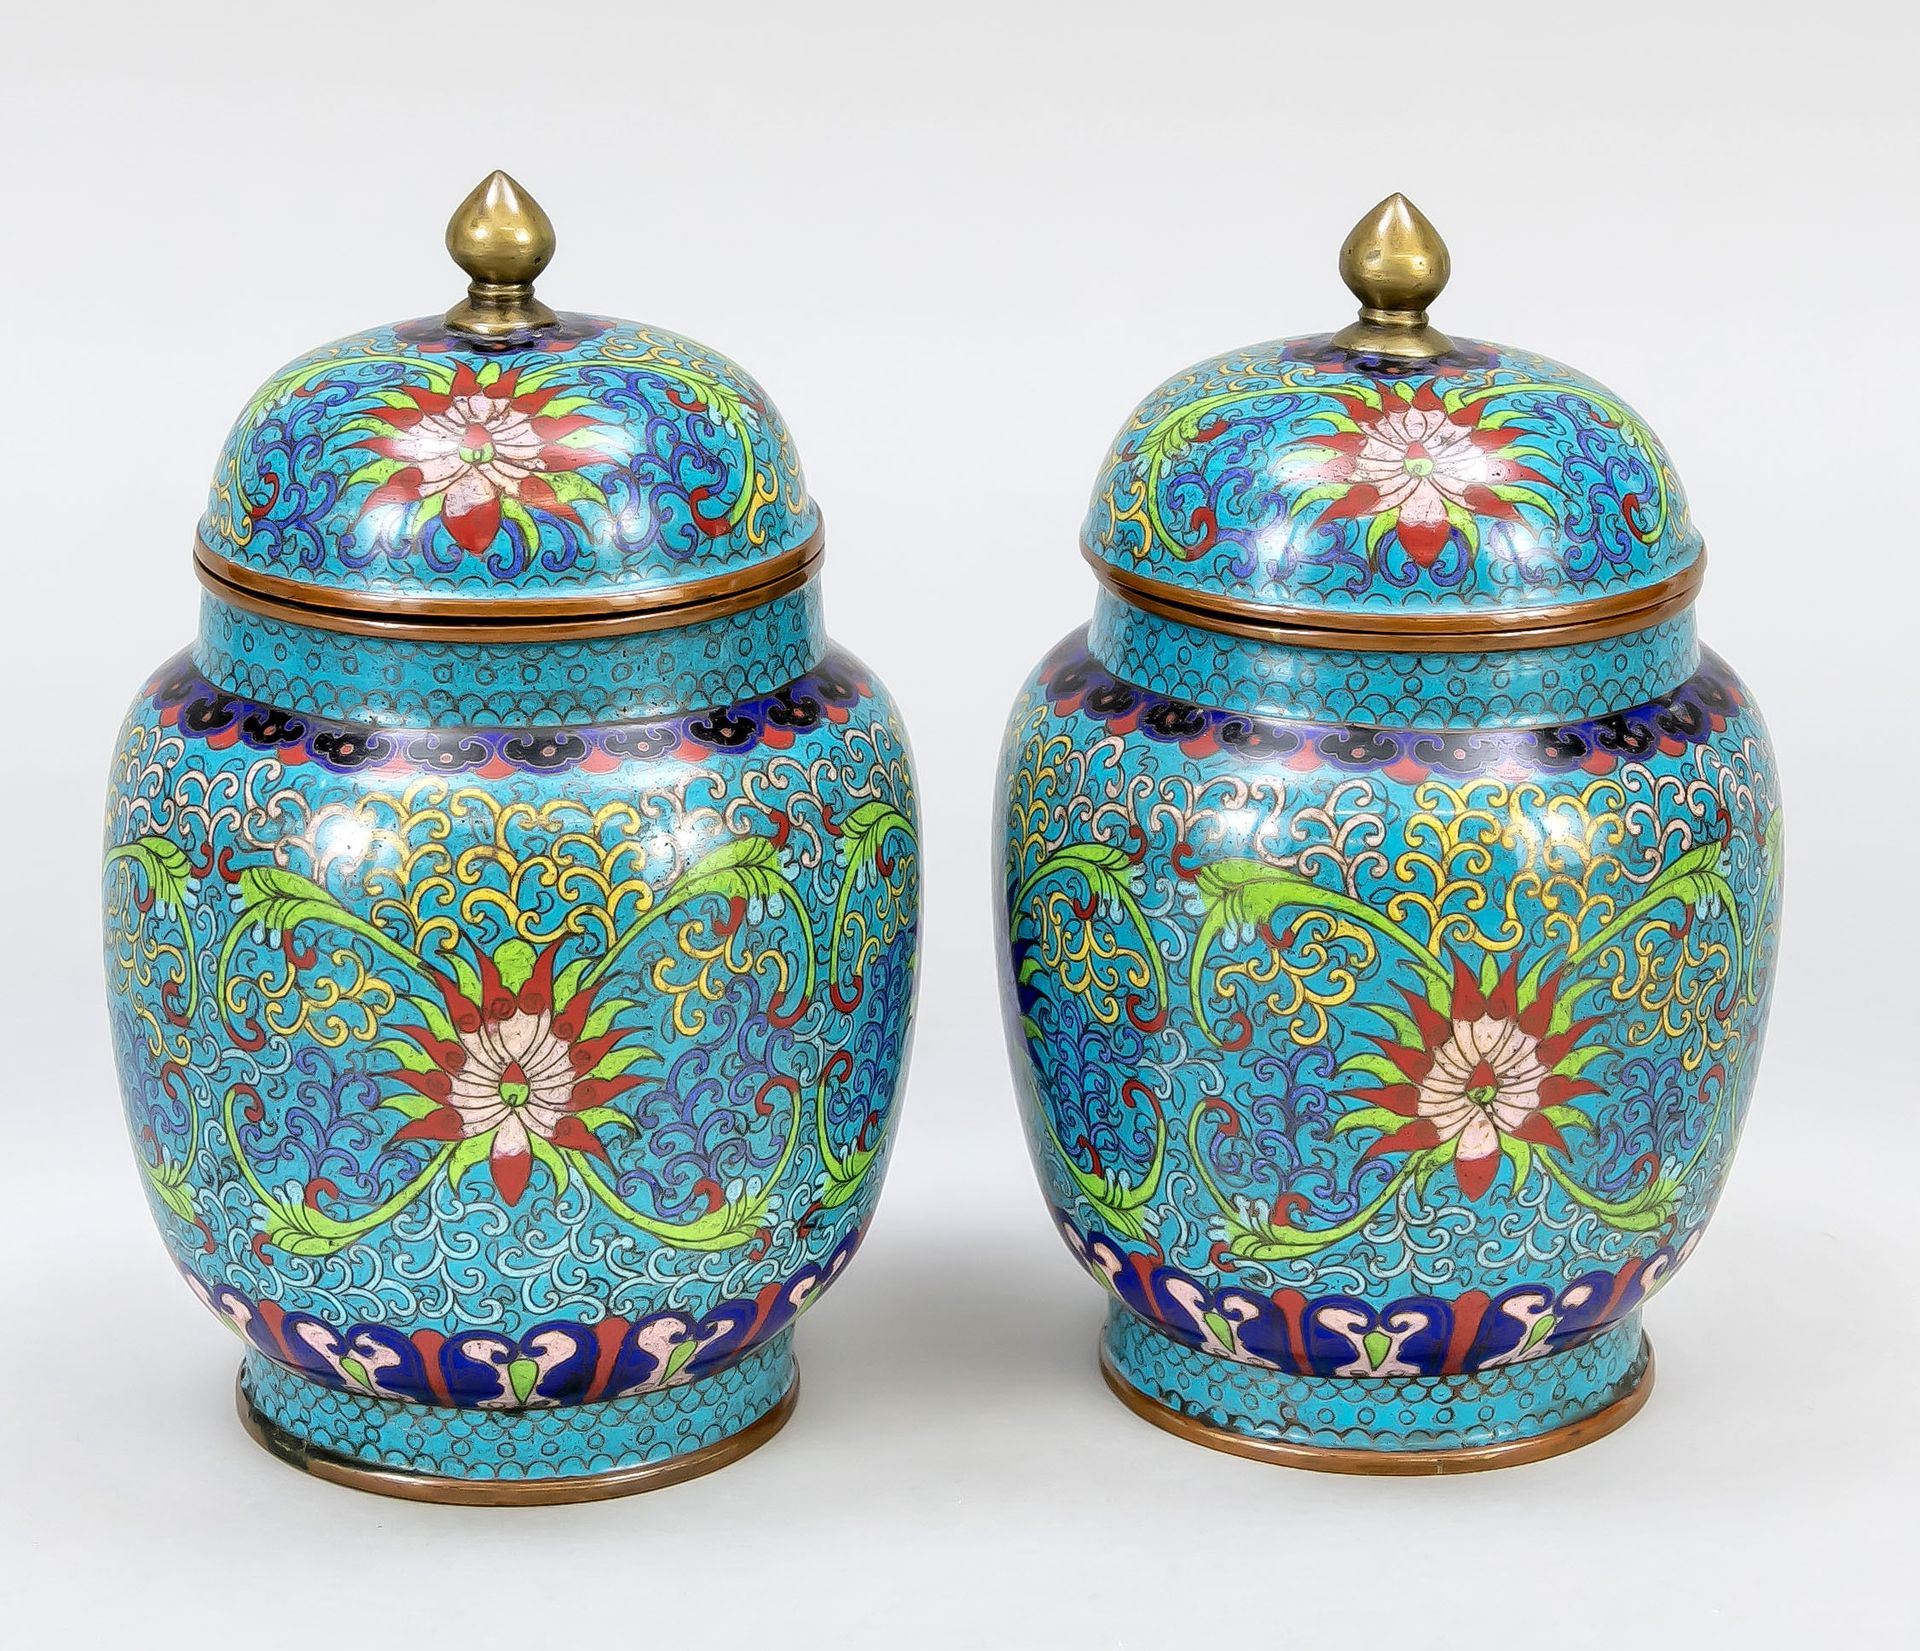 Null 景泰蓝带盖花瓶一对，中国，19/20世纪，铜芯。蓝底荷花和卷须的环状装饰，相应的盖子，高19厘米。